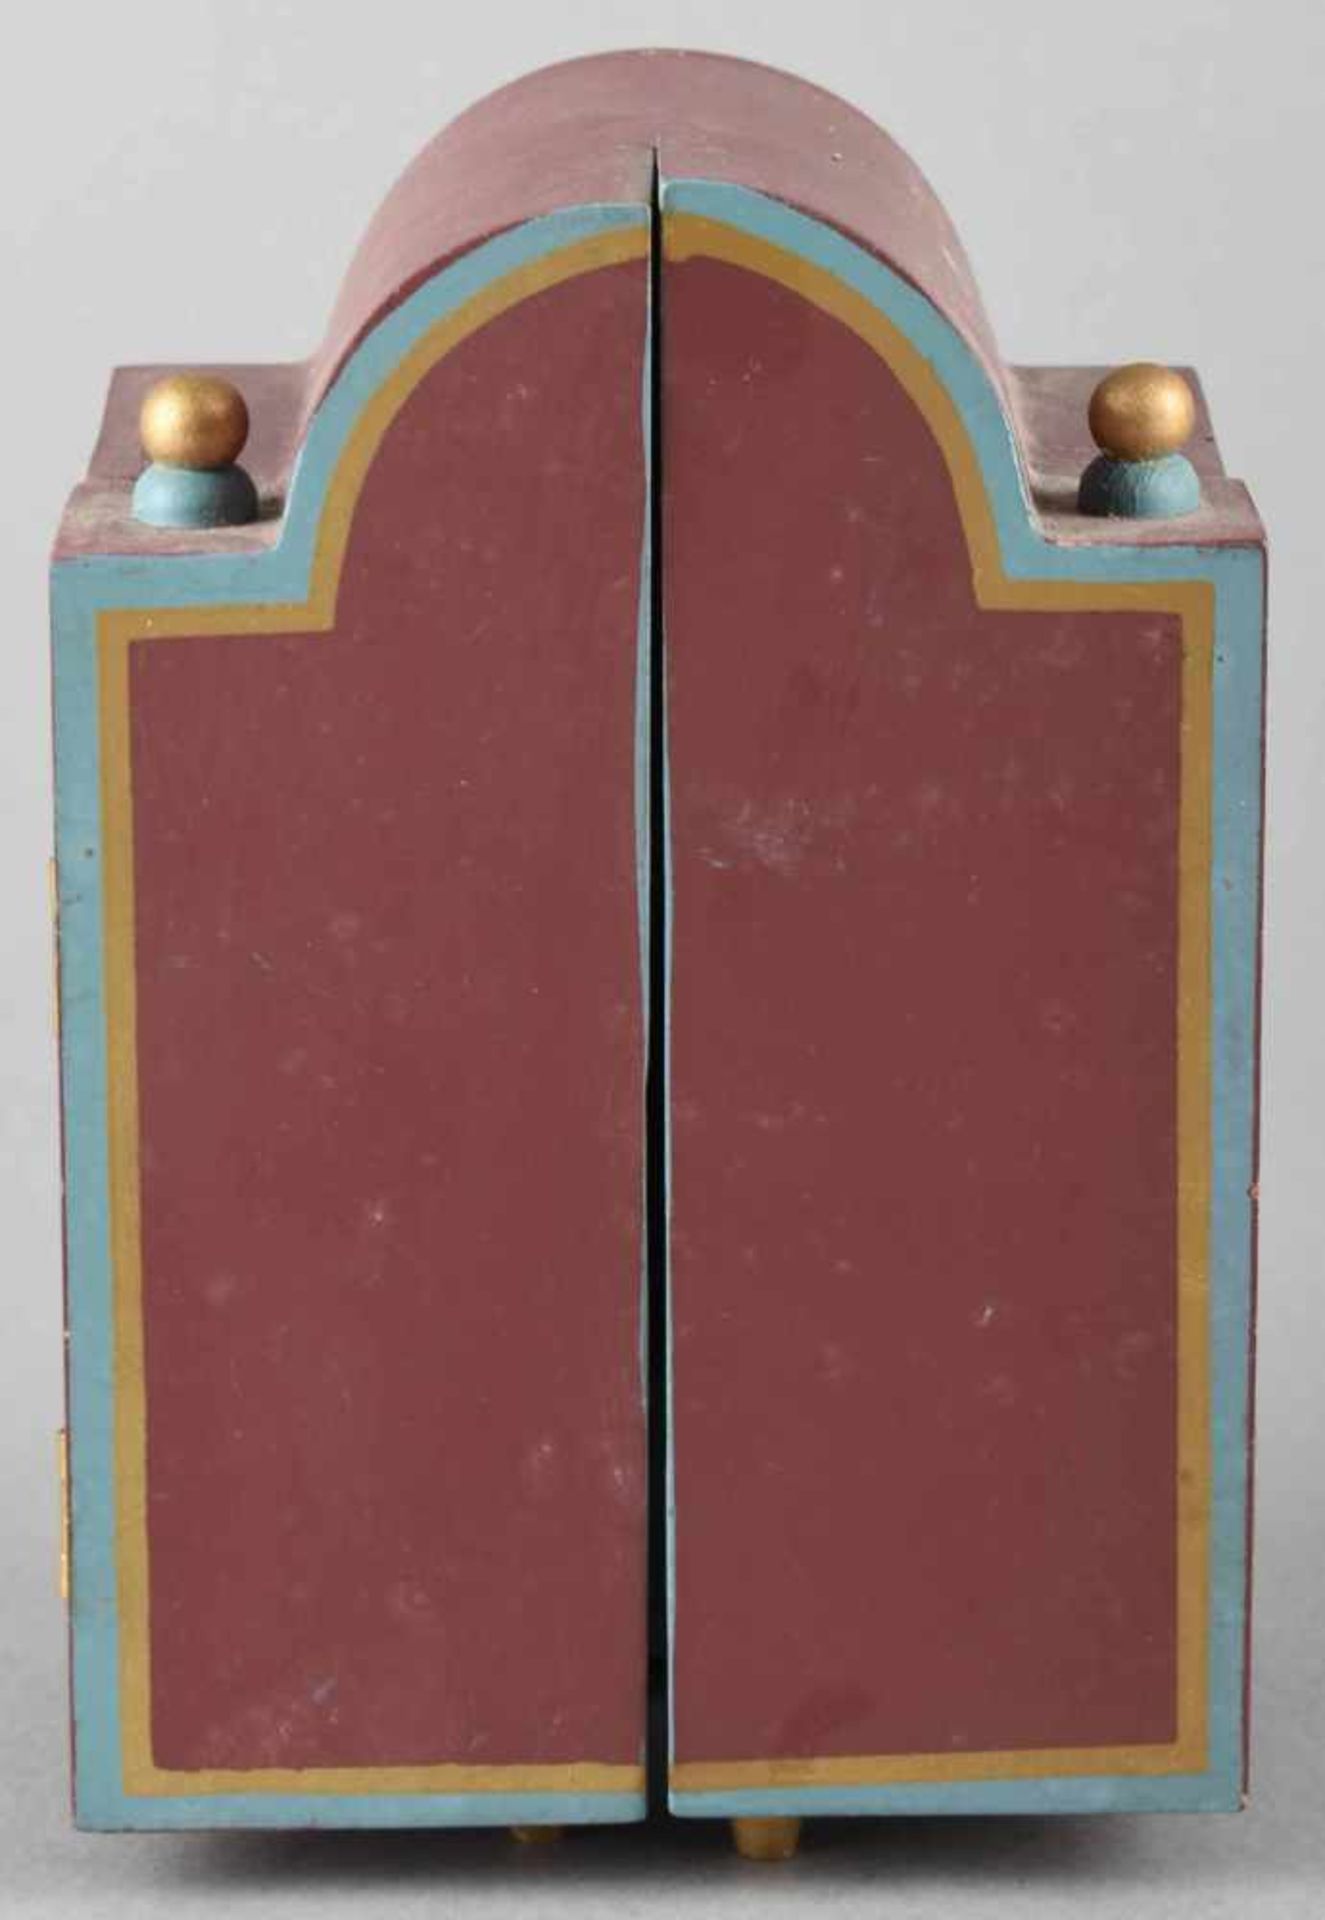 Spieldose Holz farbig bemalt, gestaltet in Form eines aufklappbaren Schrankes mit Spielzeug - Bild 3 aus 4